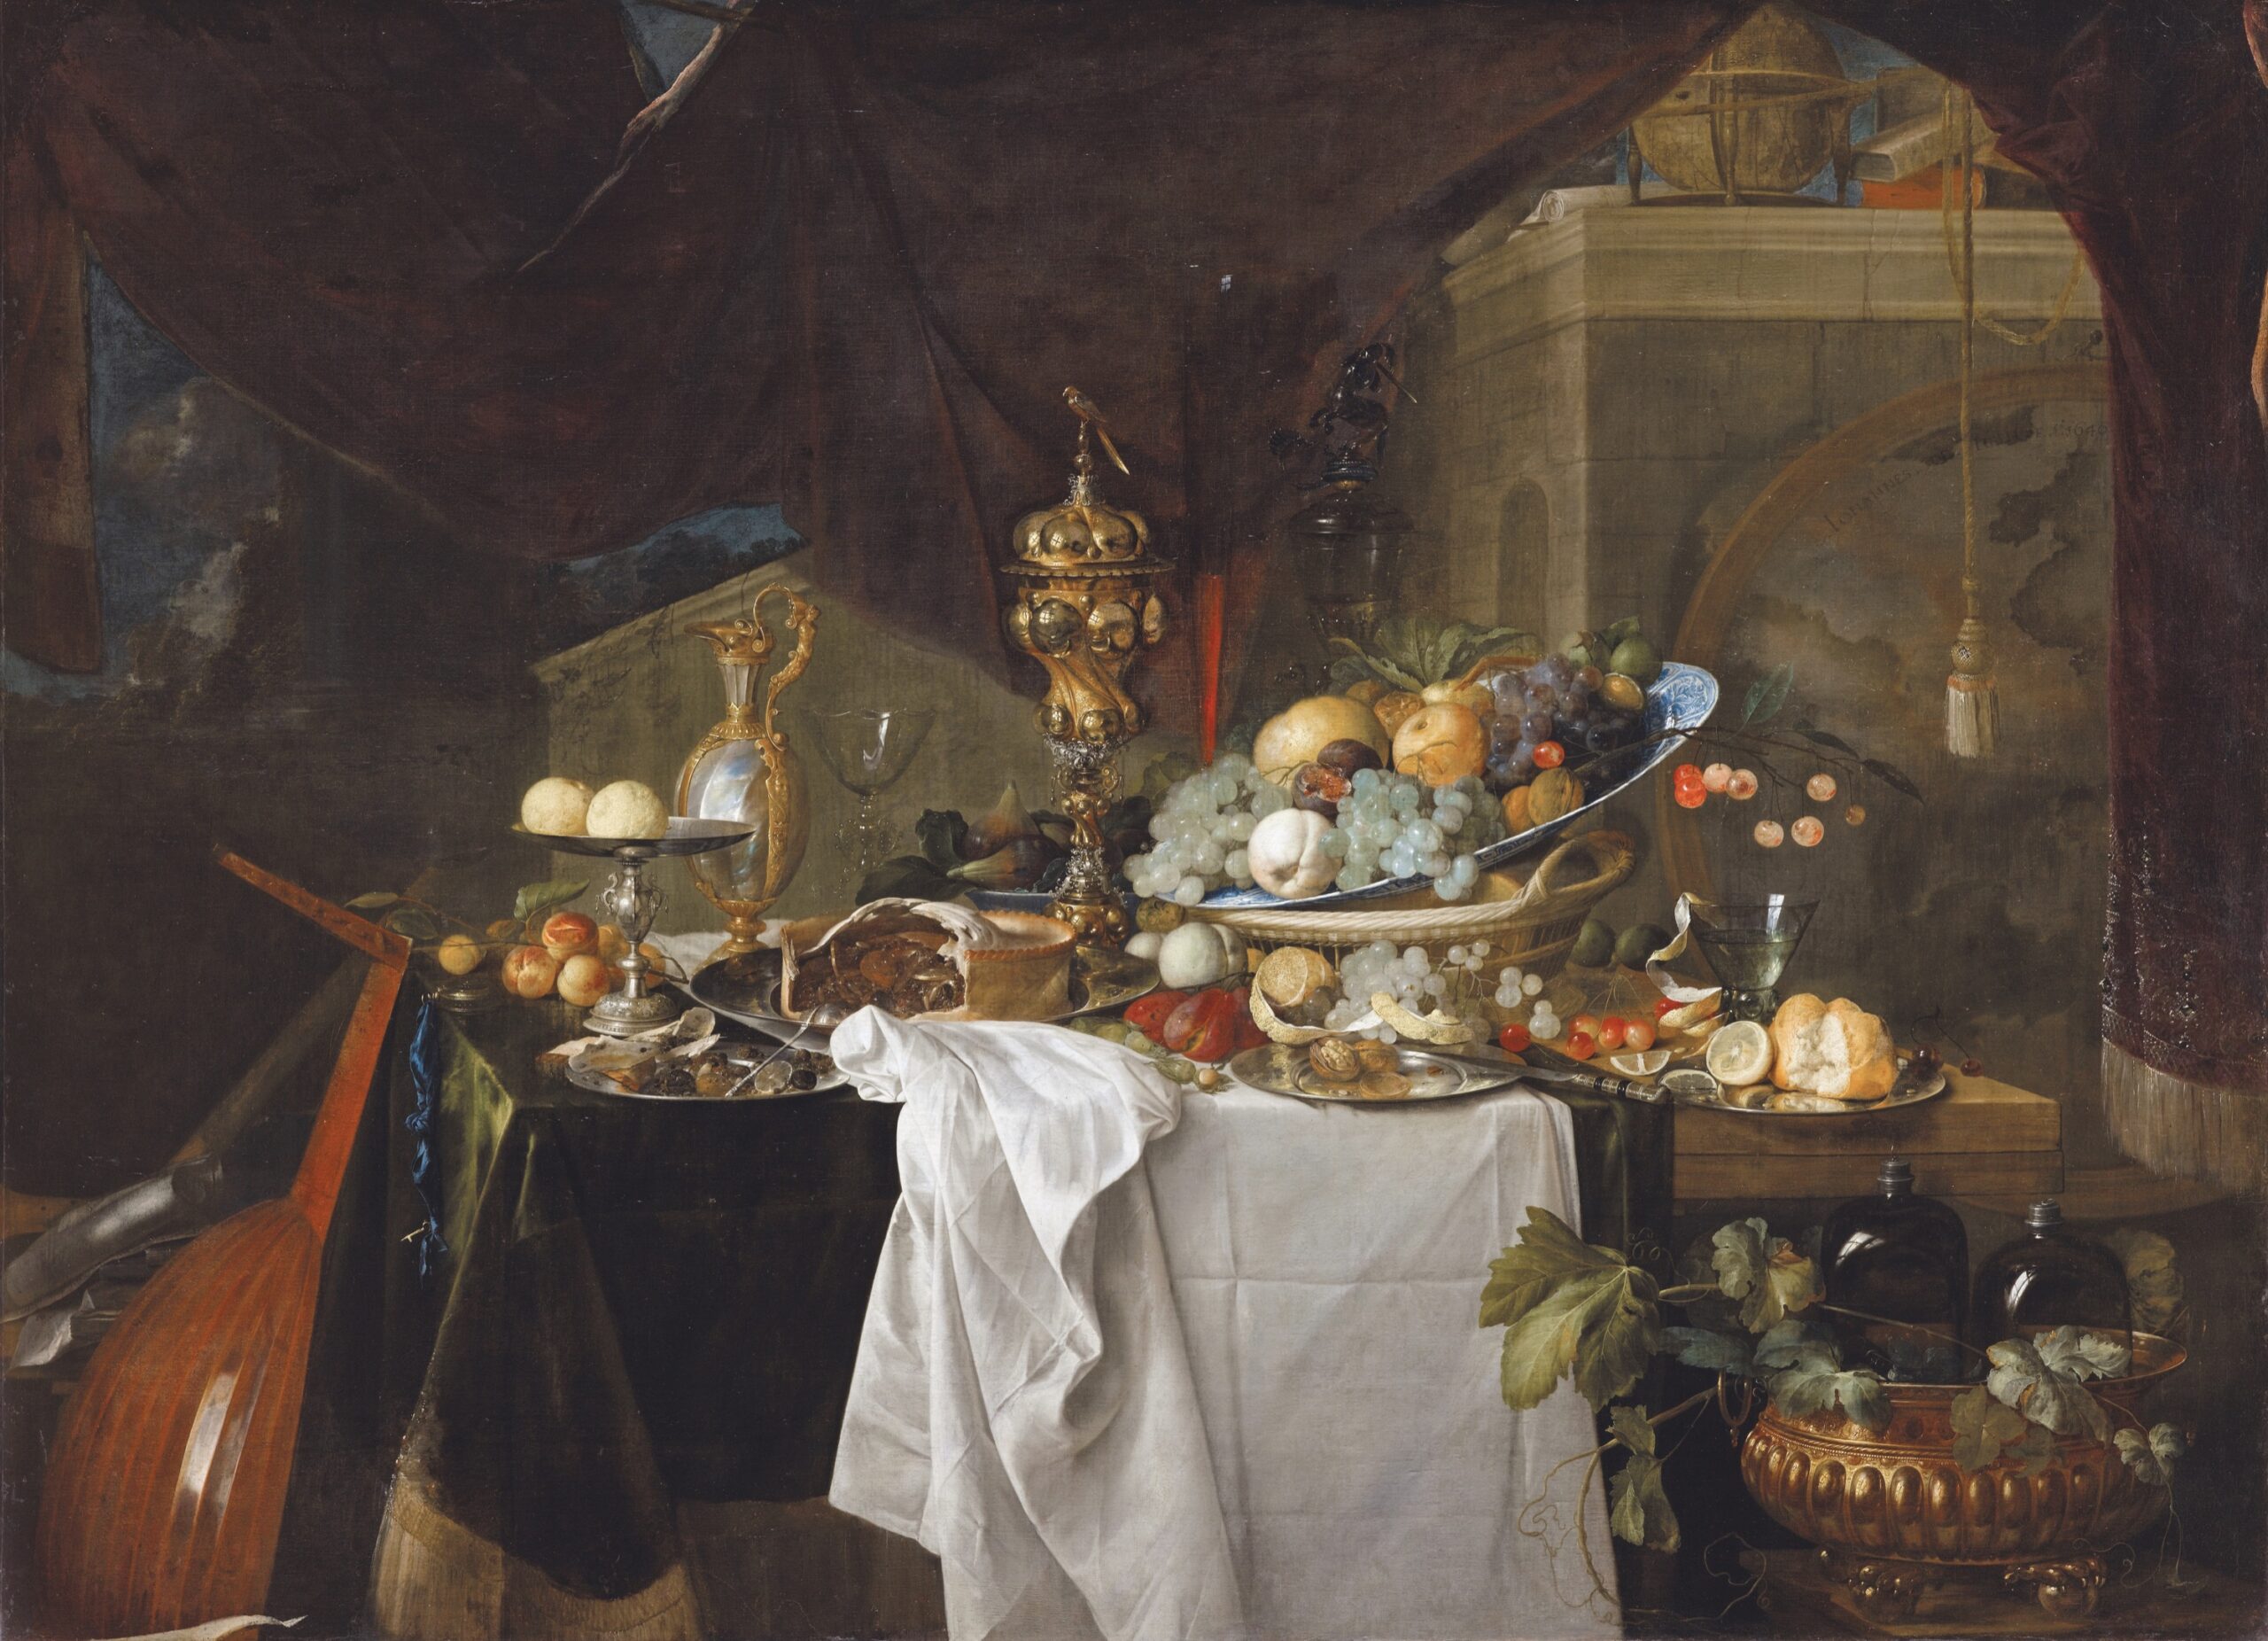 Jan Davidsz. De Heem (1606-1684), Fruits et riche vaisselle sur une table ou La Desserte, dit autrefois Un dessert, 1640. Huile sur toile, 149 x 203 cm. Paris, musée du Louvre. Photo service de presse. © RMN (musée du Louvre) – F. Raux